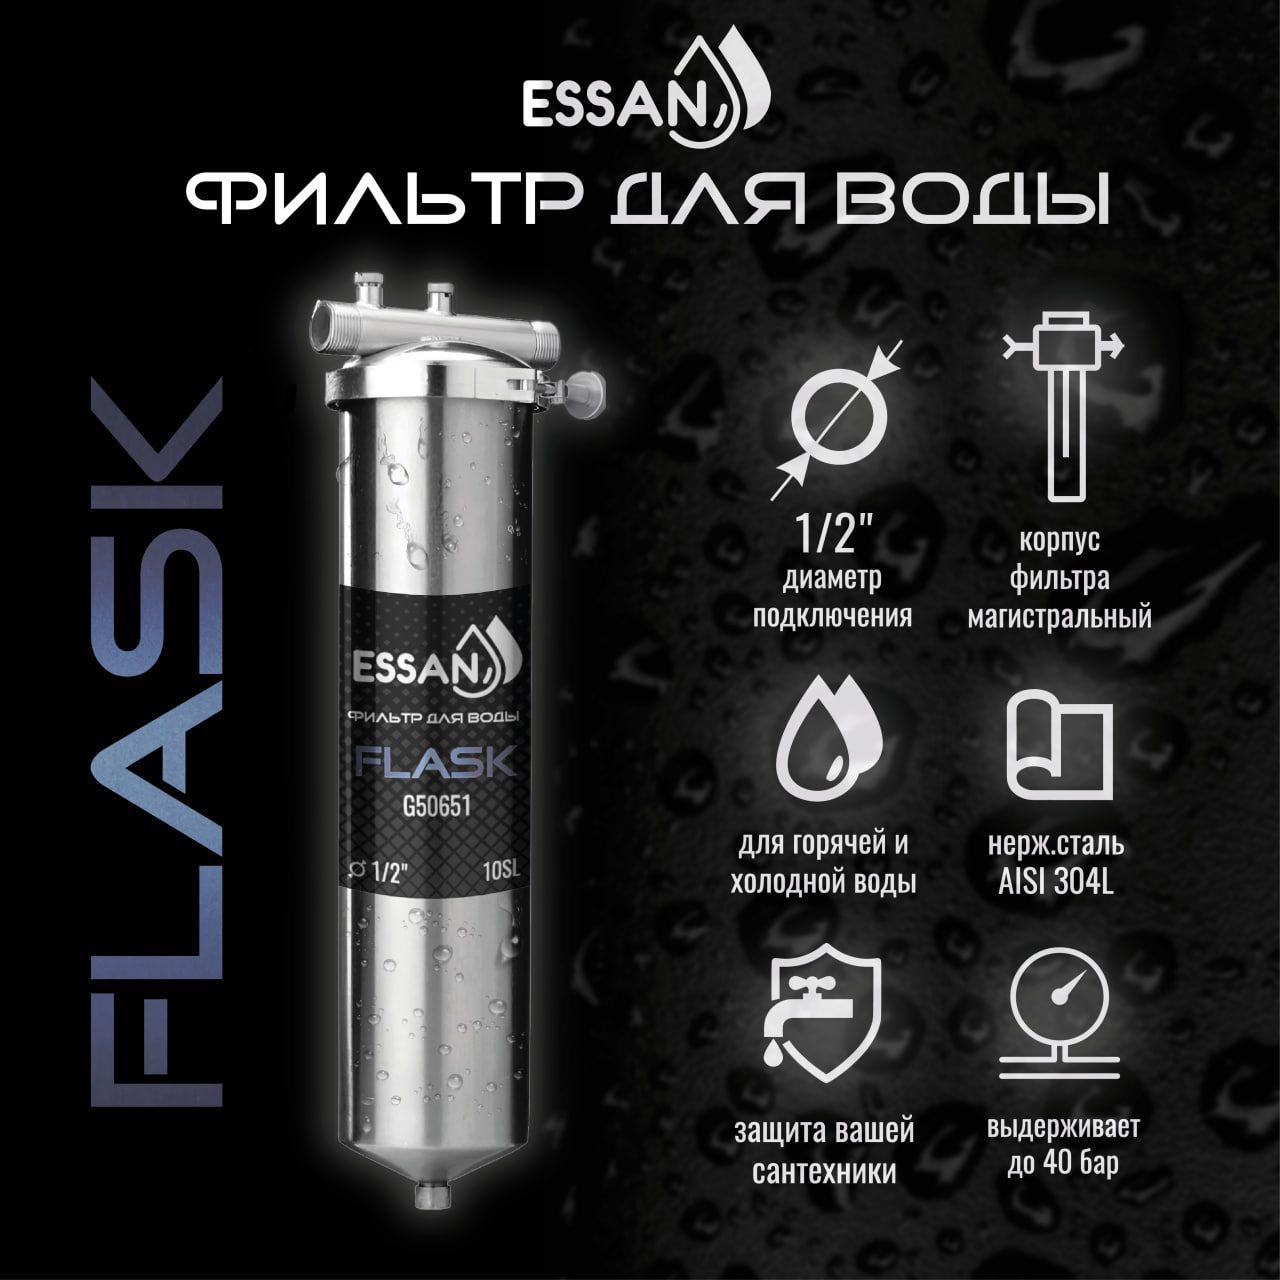 Фильтр колба проточная для магистрального водоснабжения ESSAN FLASK 10SL 1/2 H Slim Line дачный 4 в 1 в ассортименте р 4 пред